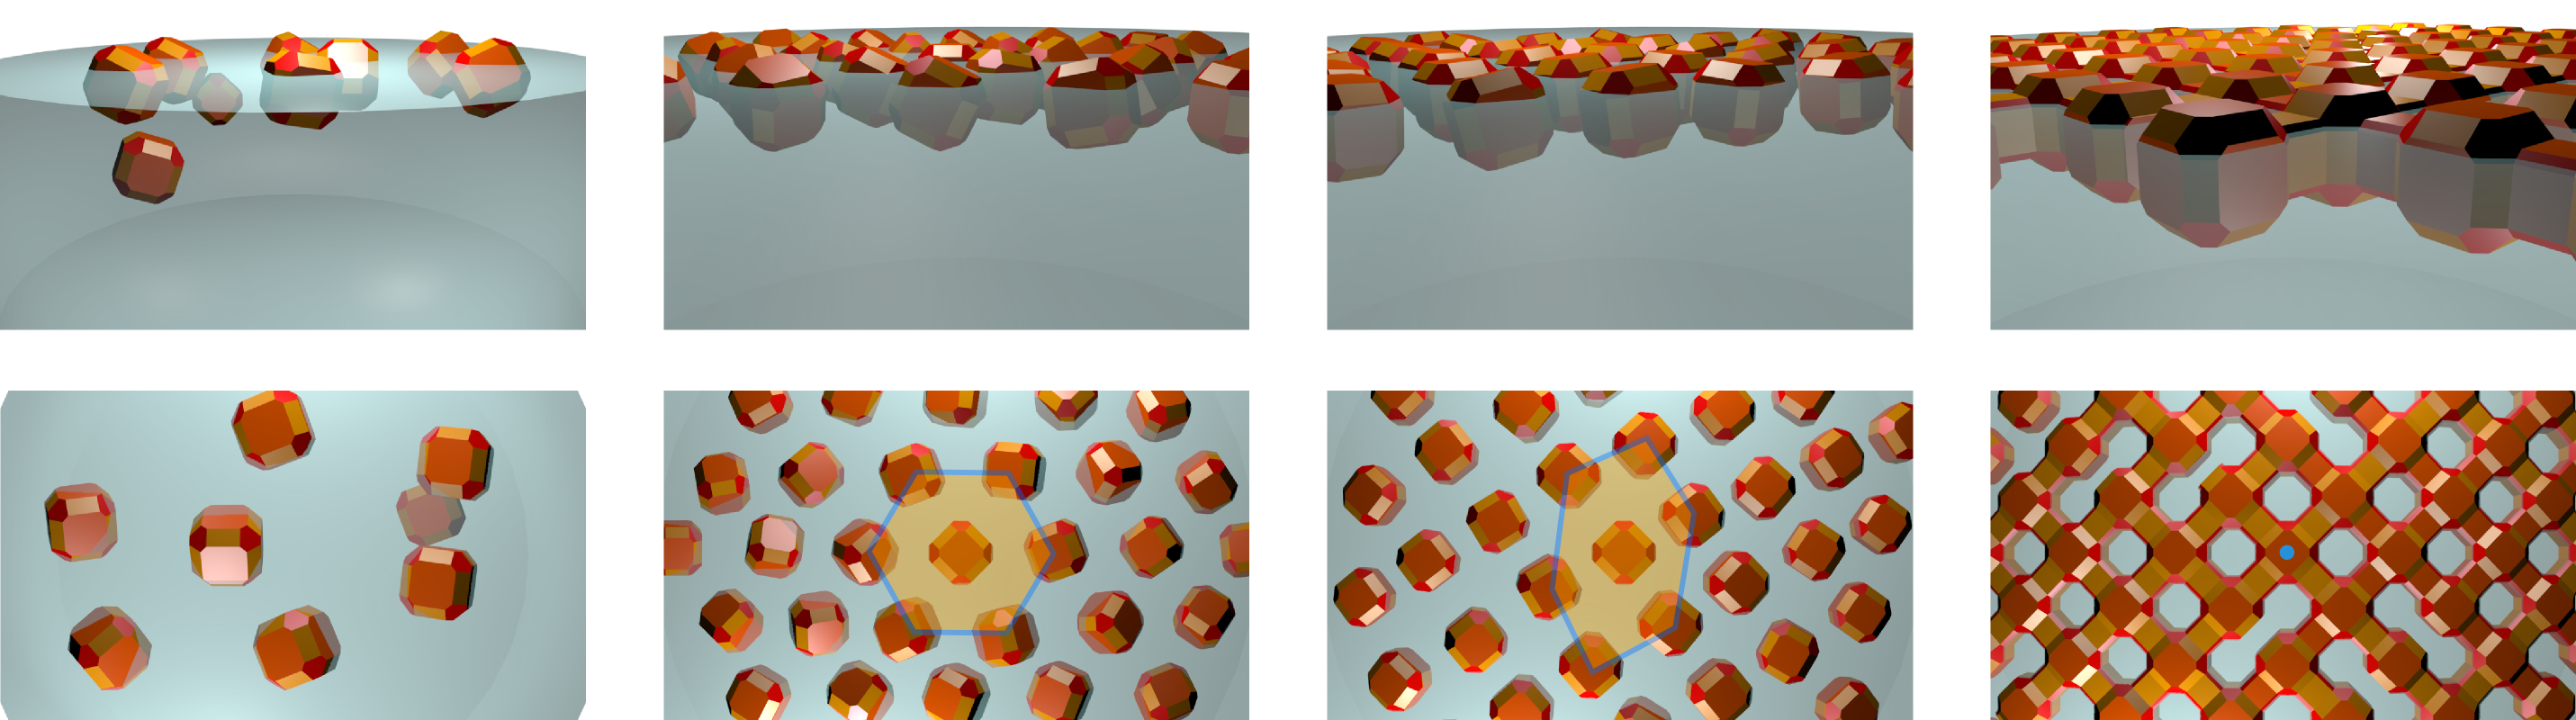 Formación del 'supercristal': los nanocristales parecen formar una estructura hexagonal en la superficie del agua (el refrigerante), cuando se evapora el fluido oleaginoso. Fuente: Universidad de Utrecht.